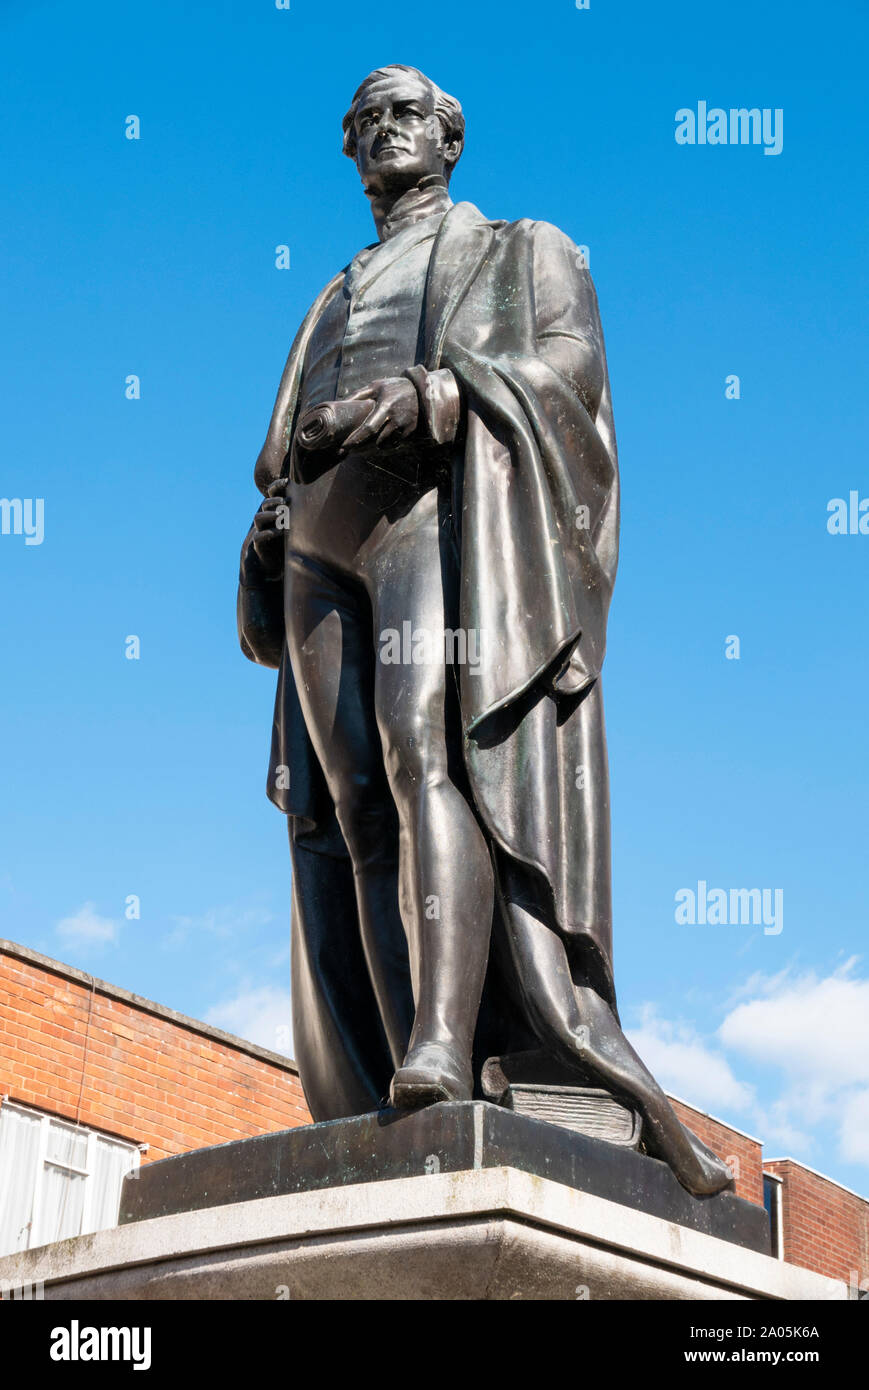 Statue de Sir Robert Peel à l'extérieur de l'hôtel de ville place du marché Tamworth Tamworth Staffordshire England UK ville GO UK Europe Banque D'Images